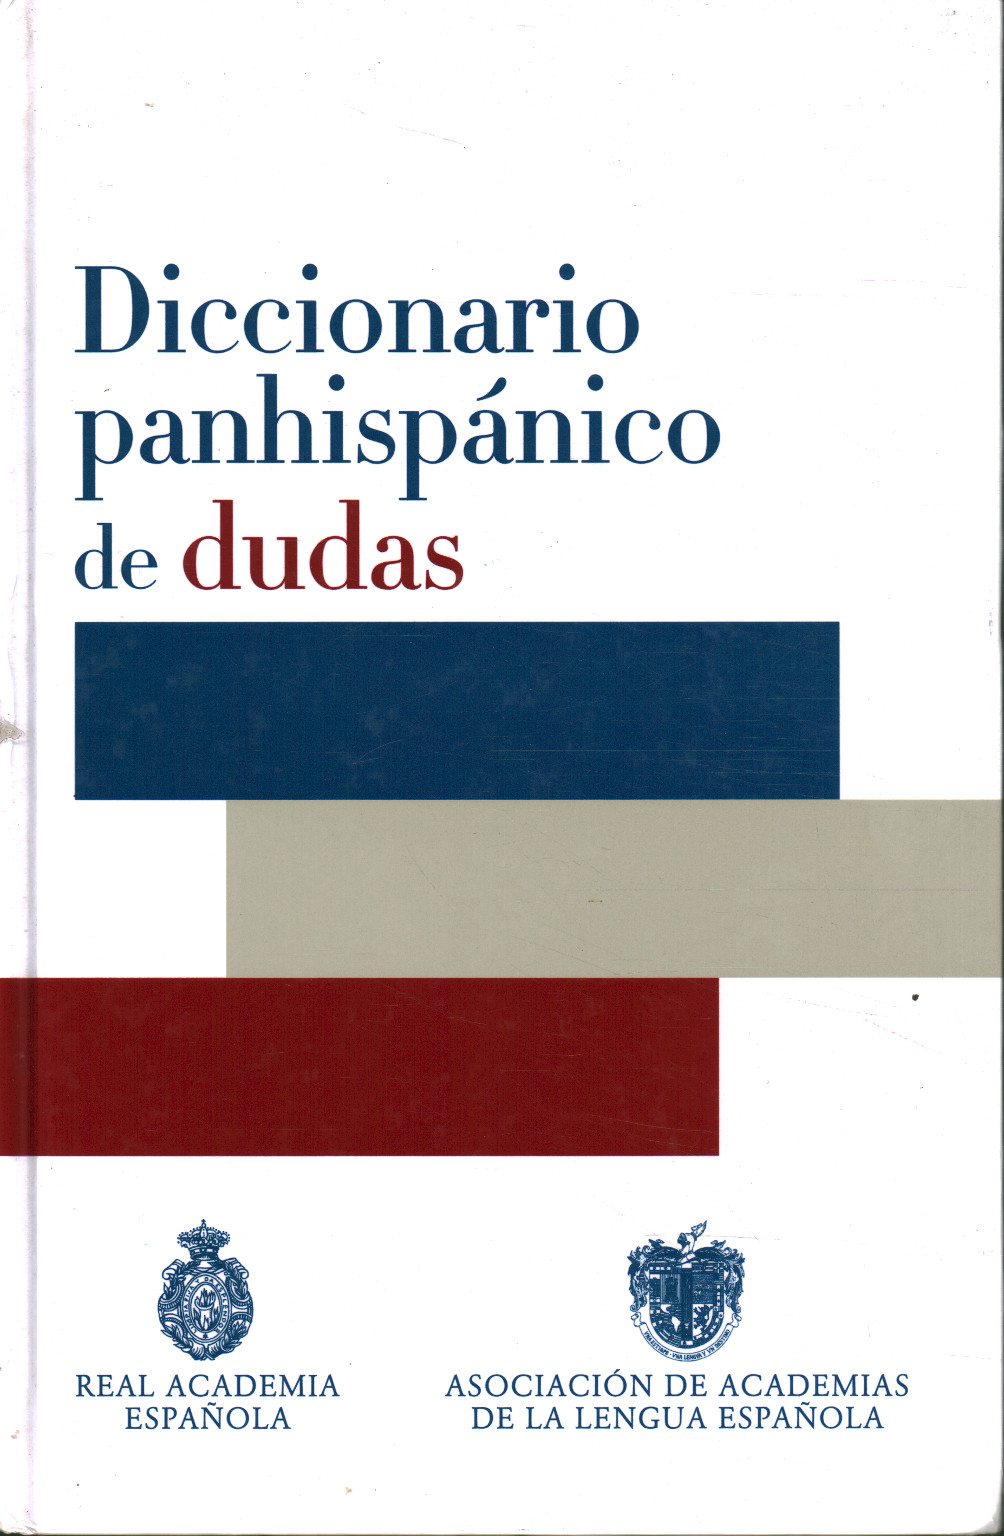 Panhispánico diccionario de dudas